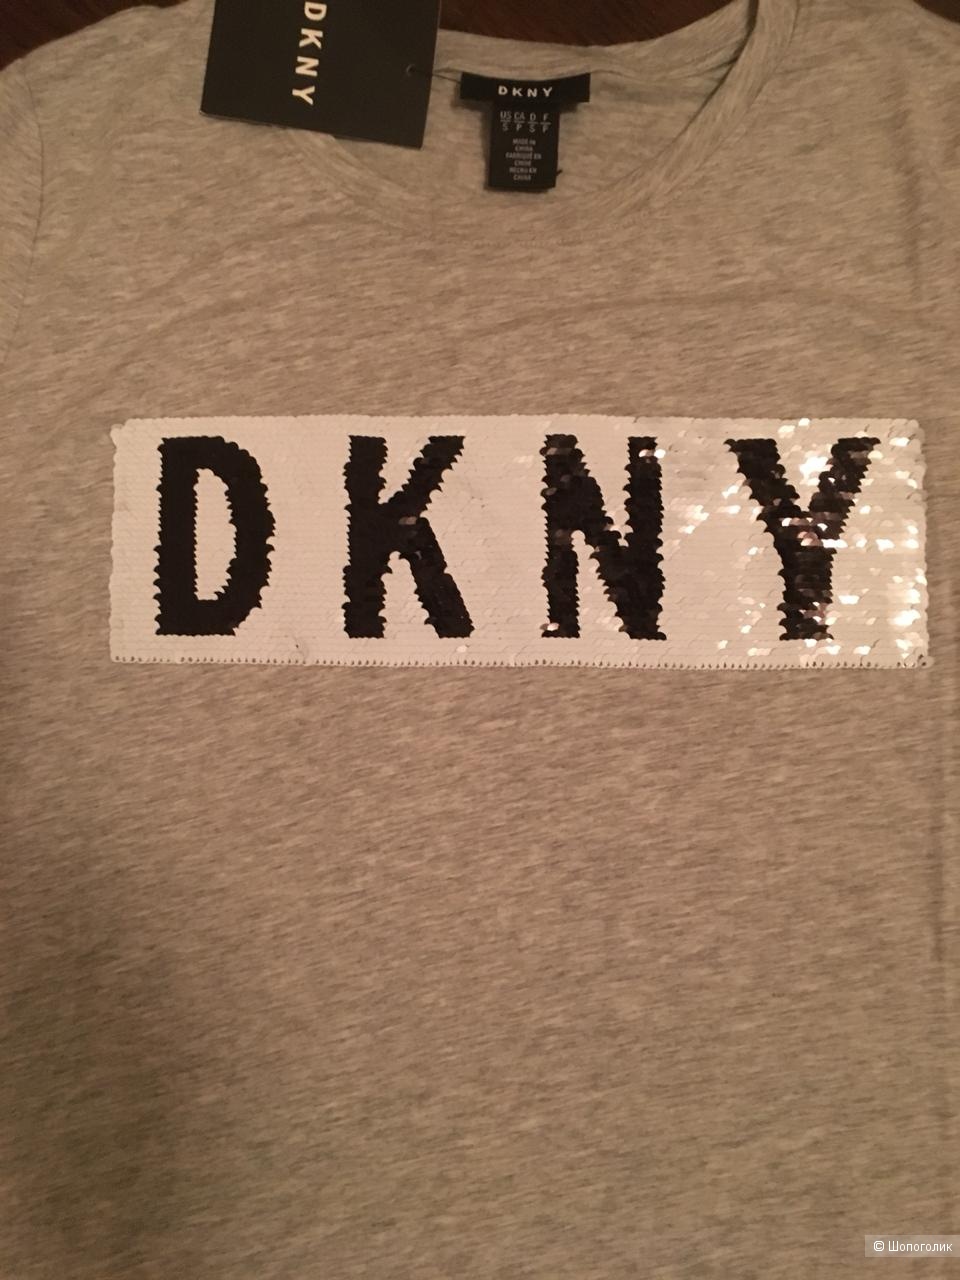 Футболка DKNY, р S.